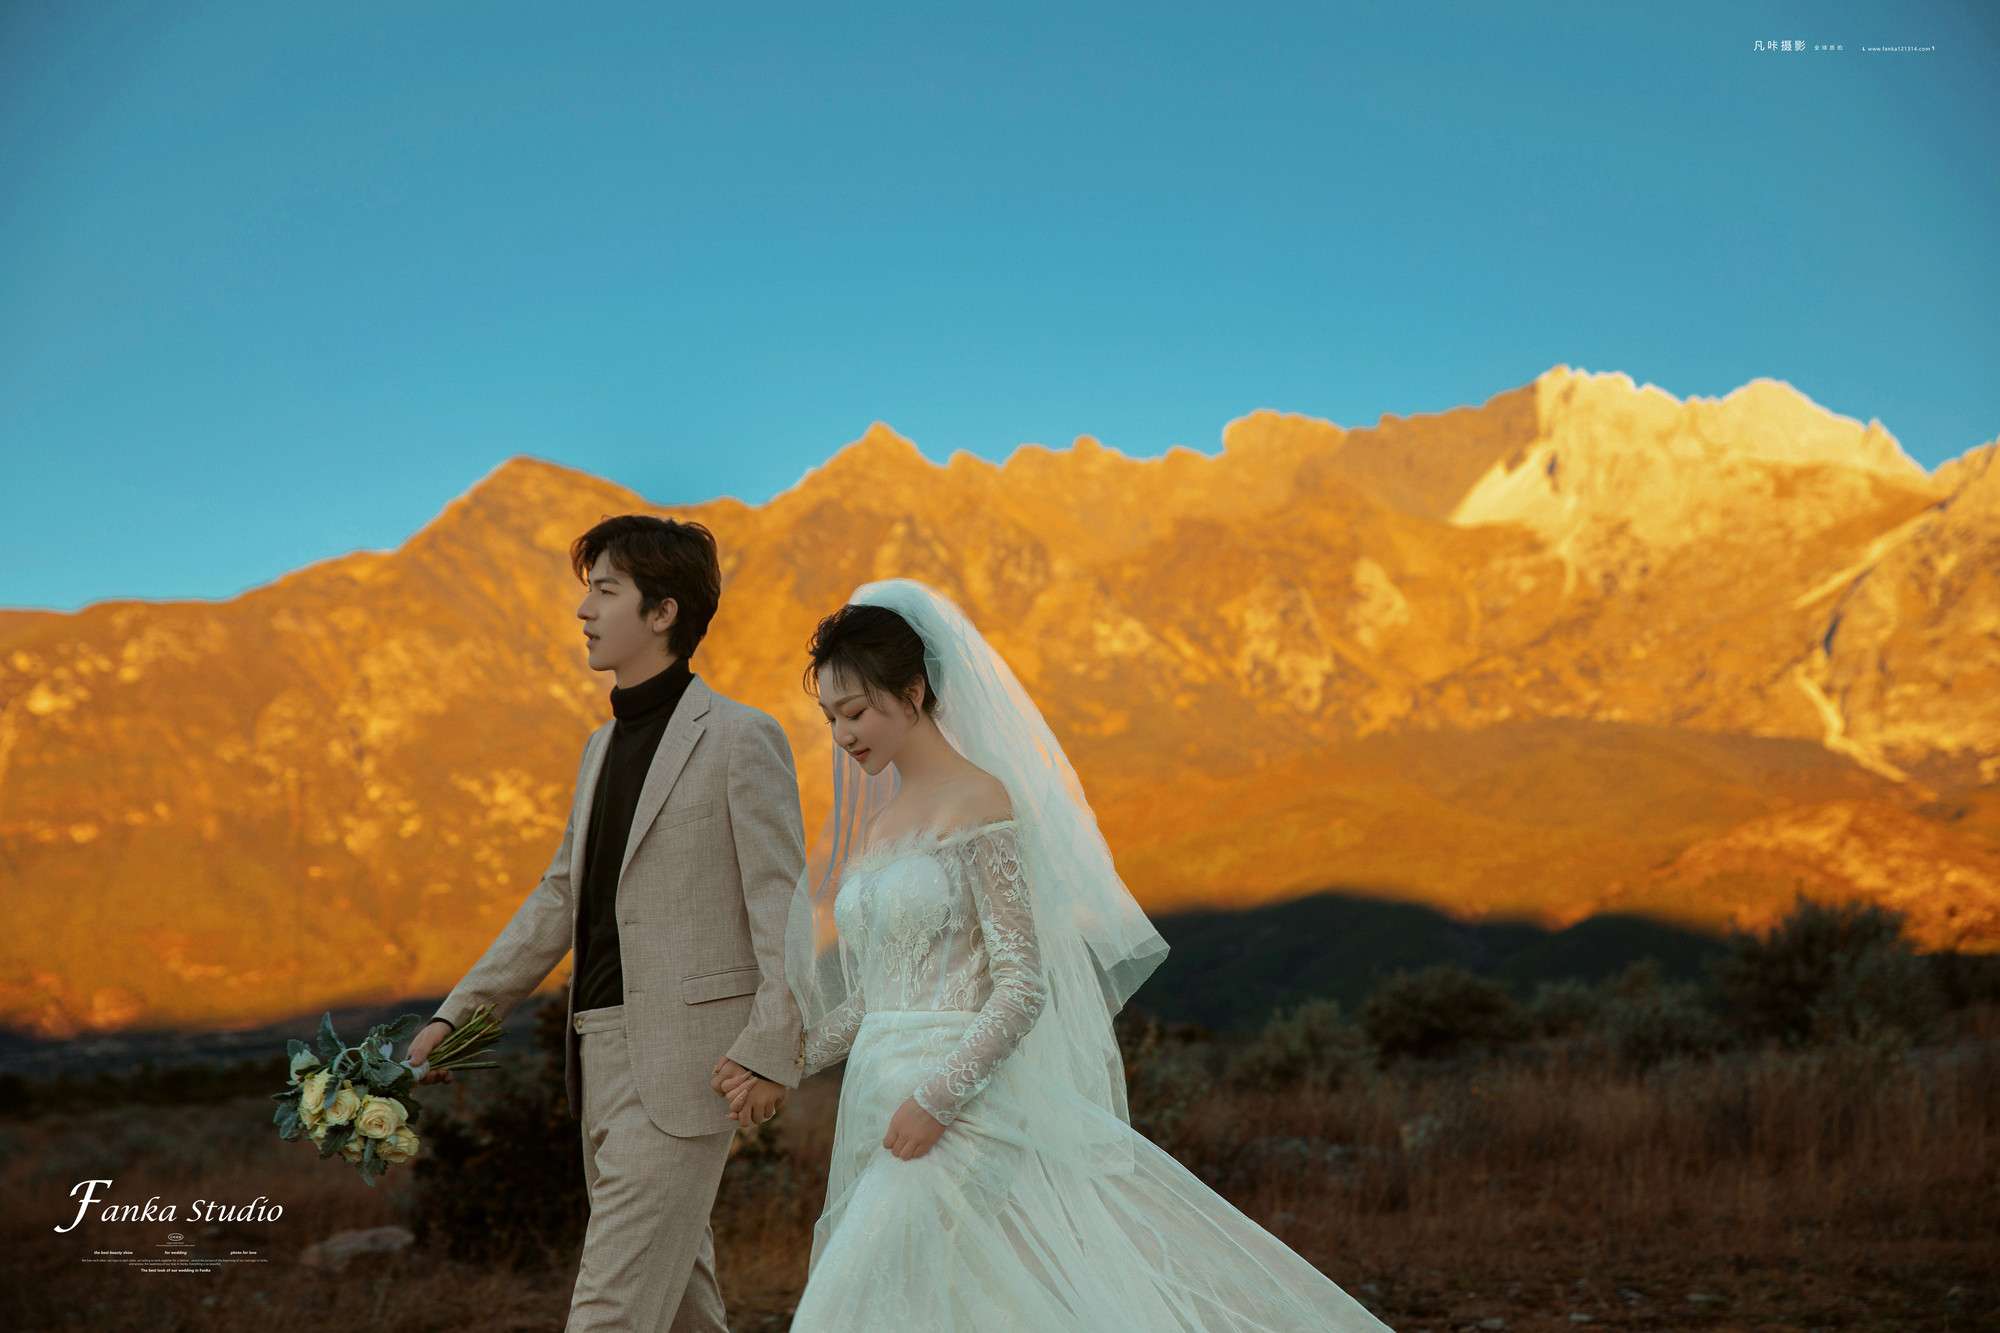 凡咔摄影全球旅拍 的想法: 丽江日照金山婚纱照分享 听说看到日照金